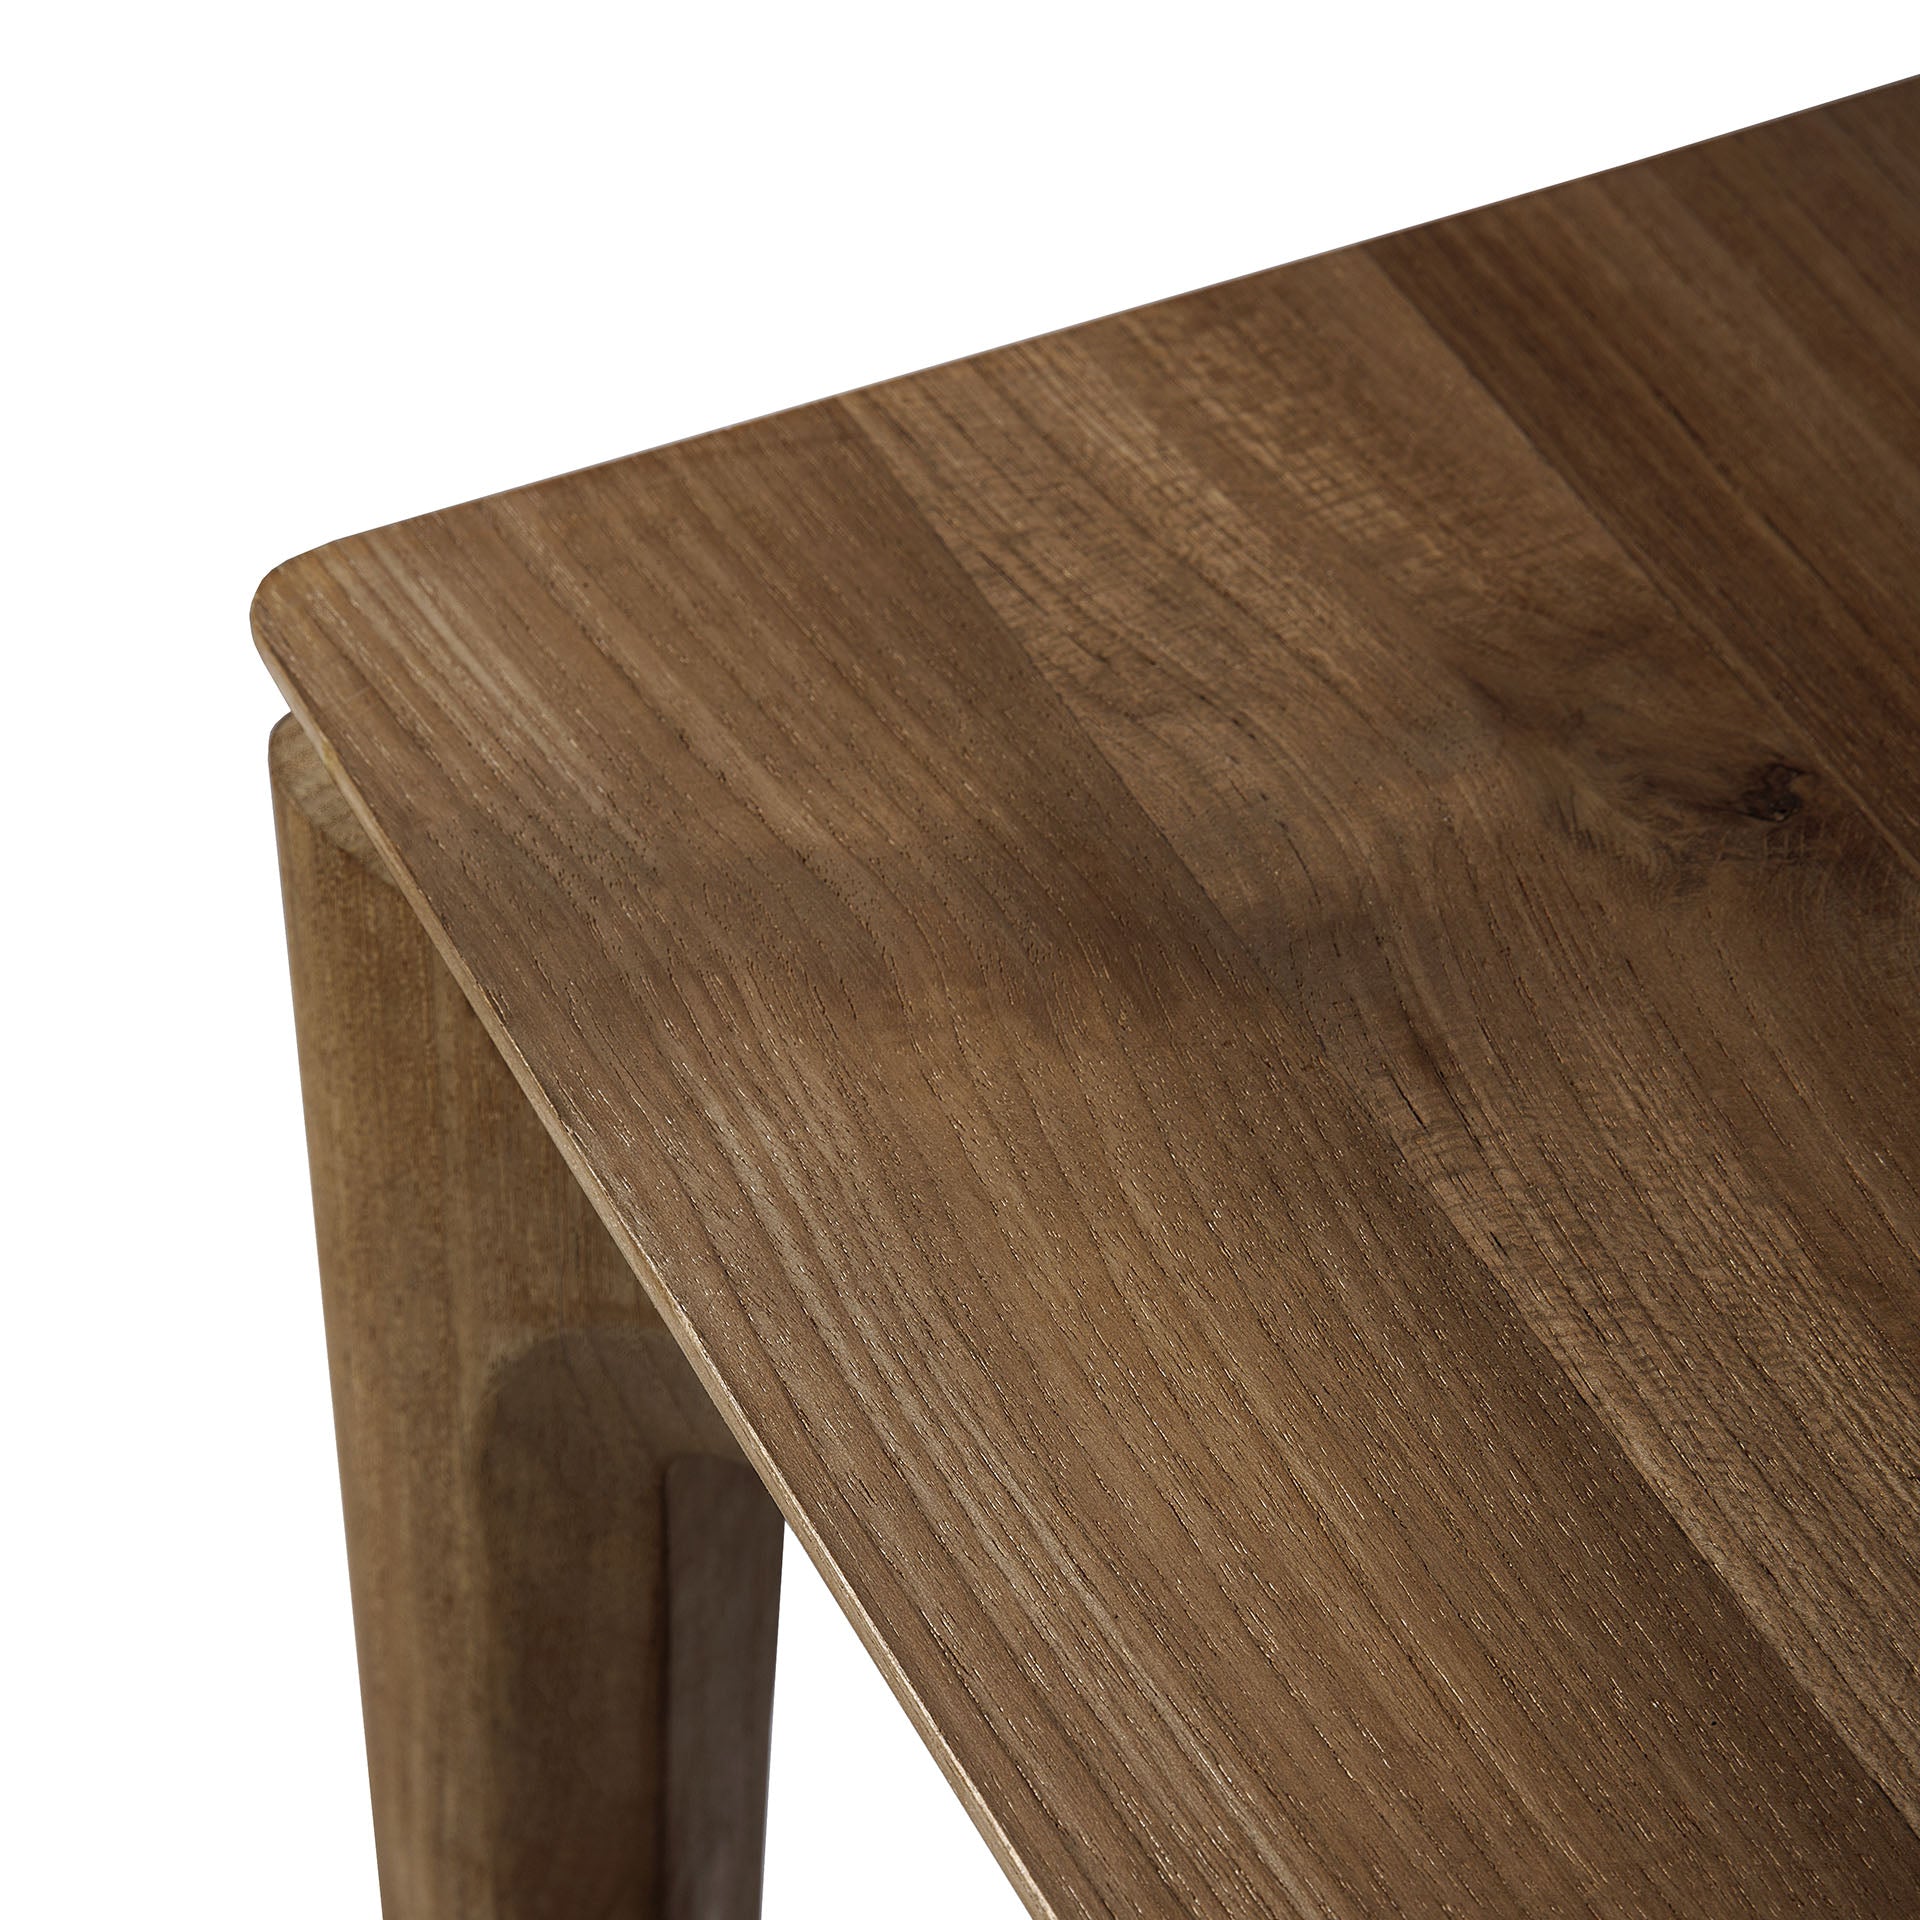 比利時原裝進口實木傢俬 -  餐桌系列 - Bok系列柚木餐桌